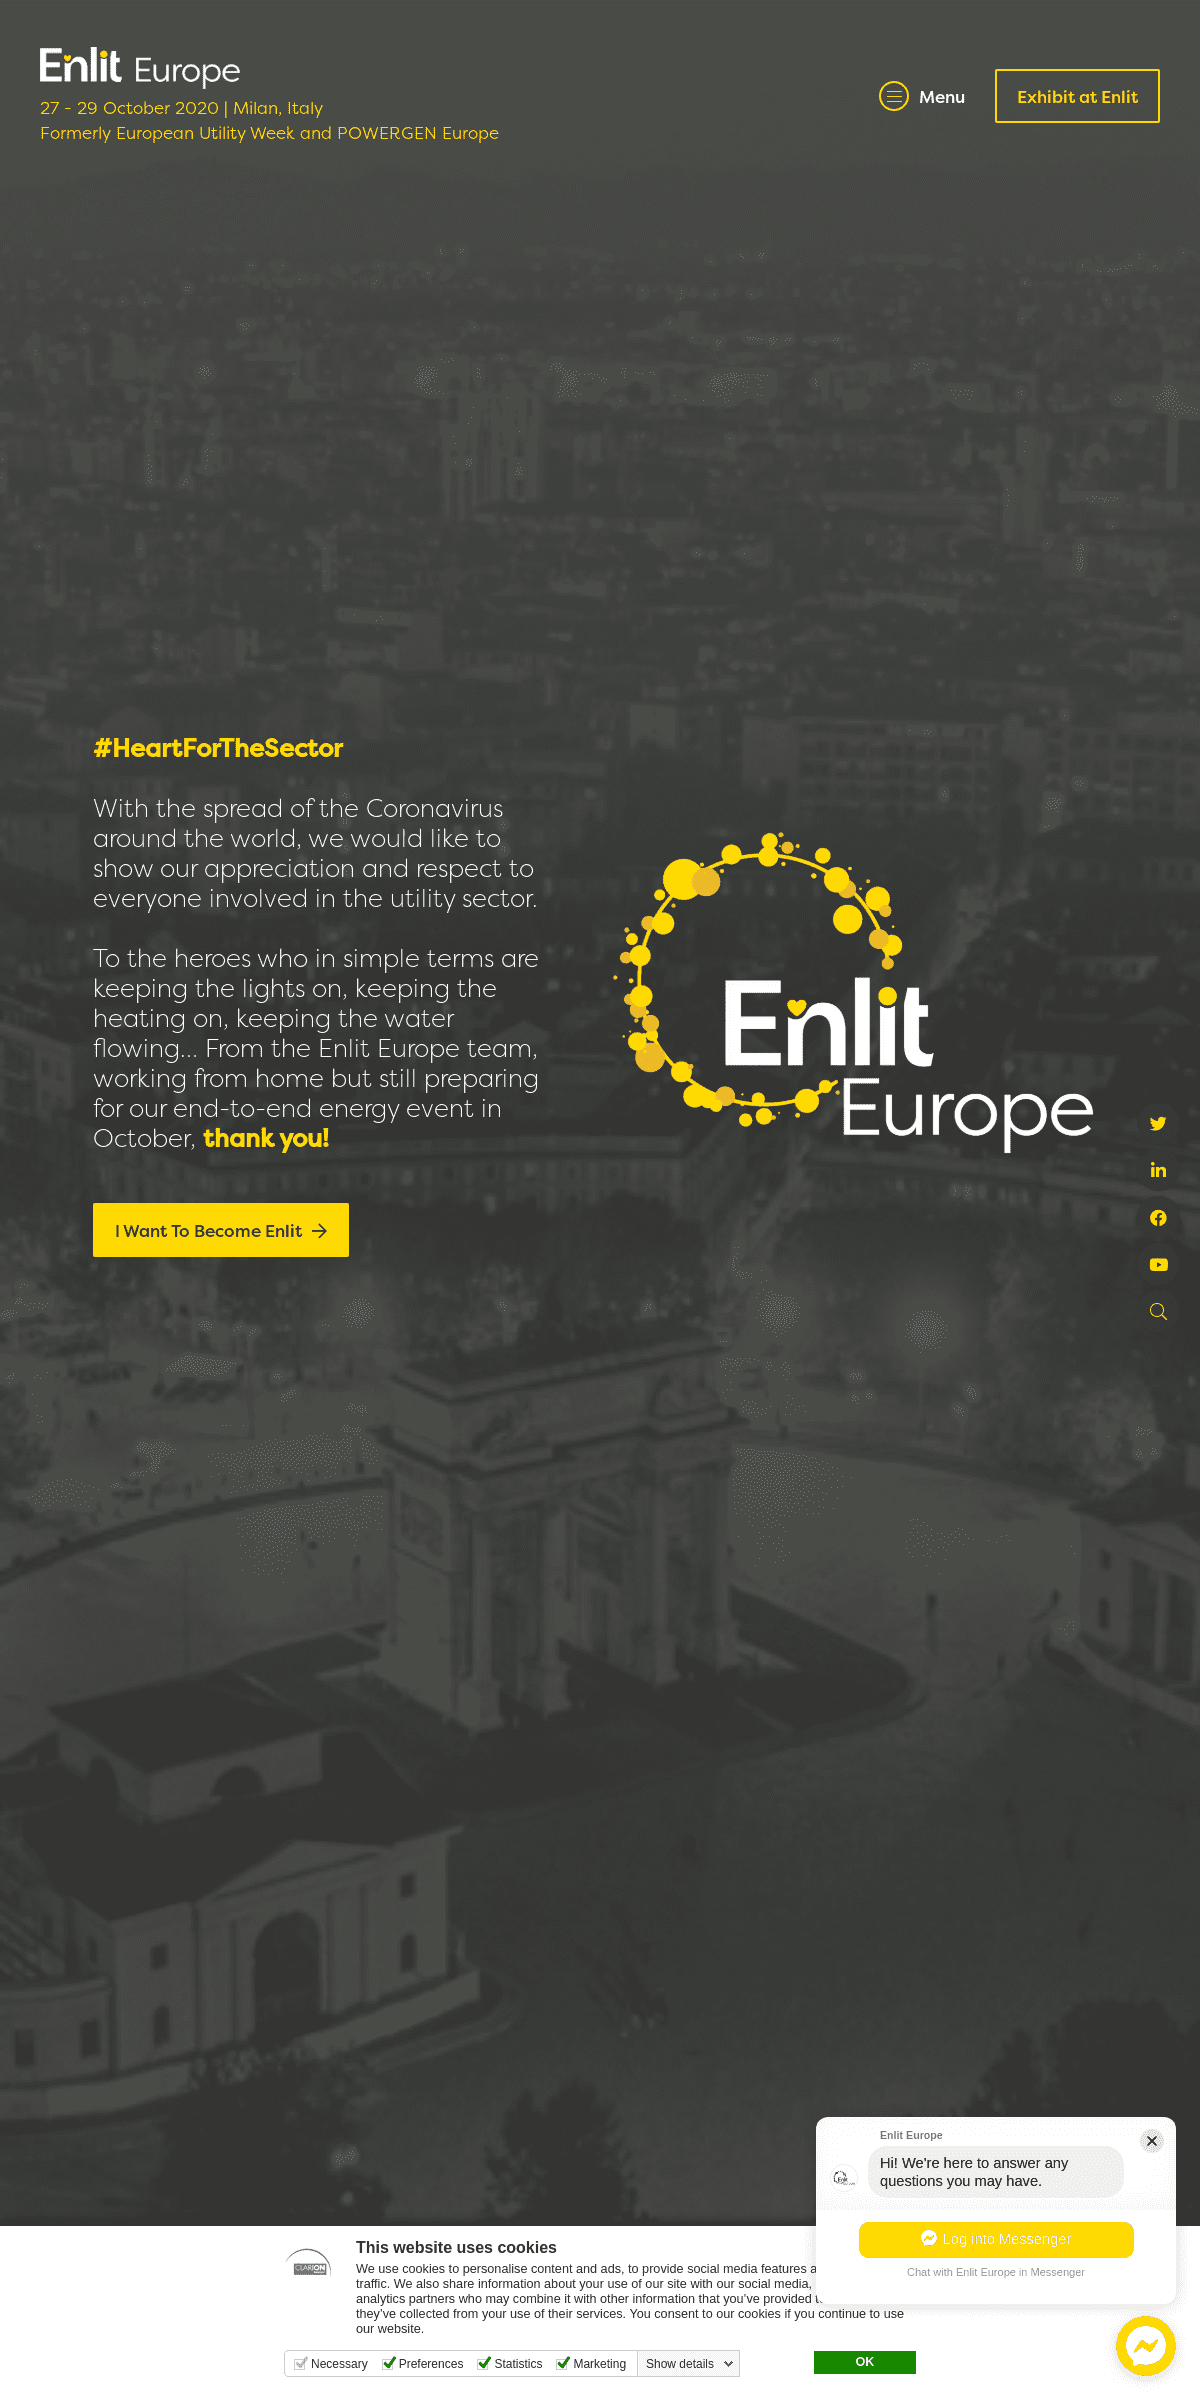 A complete backup of enlit-europe.com